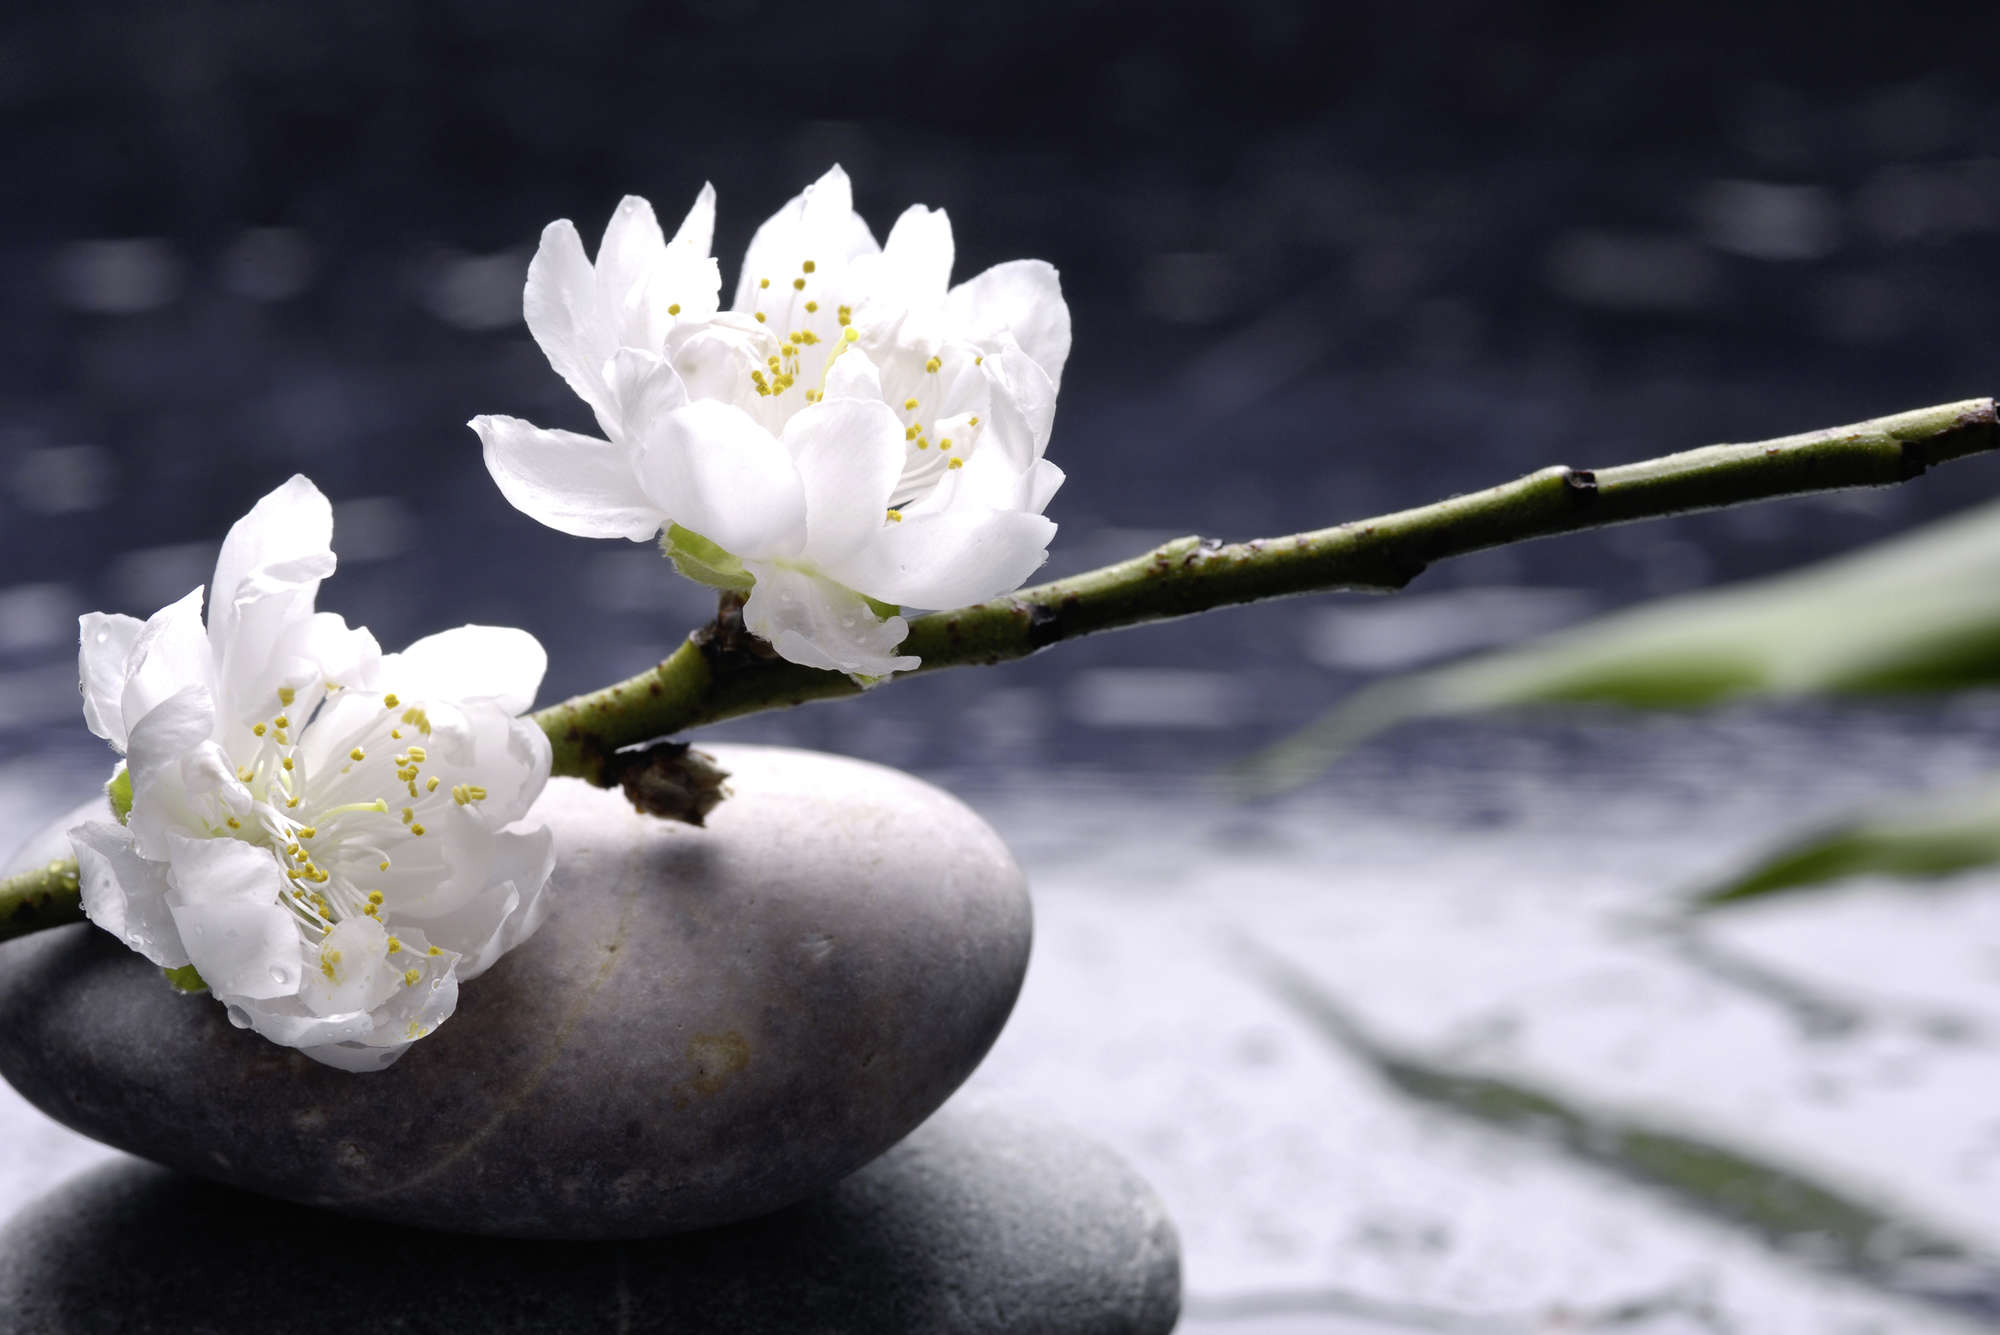             Fototapete Wellness Steine mit Blüten – Premium Glattvlies
        